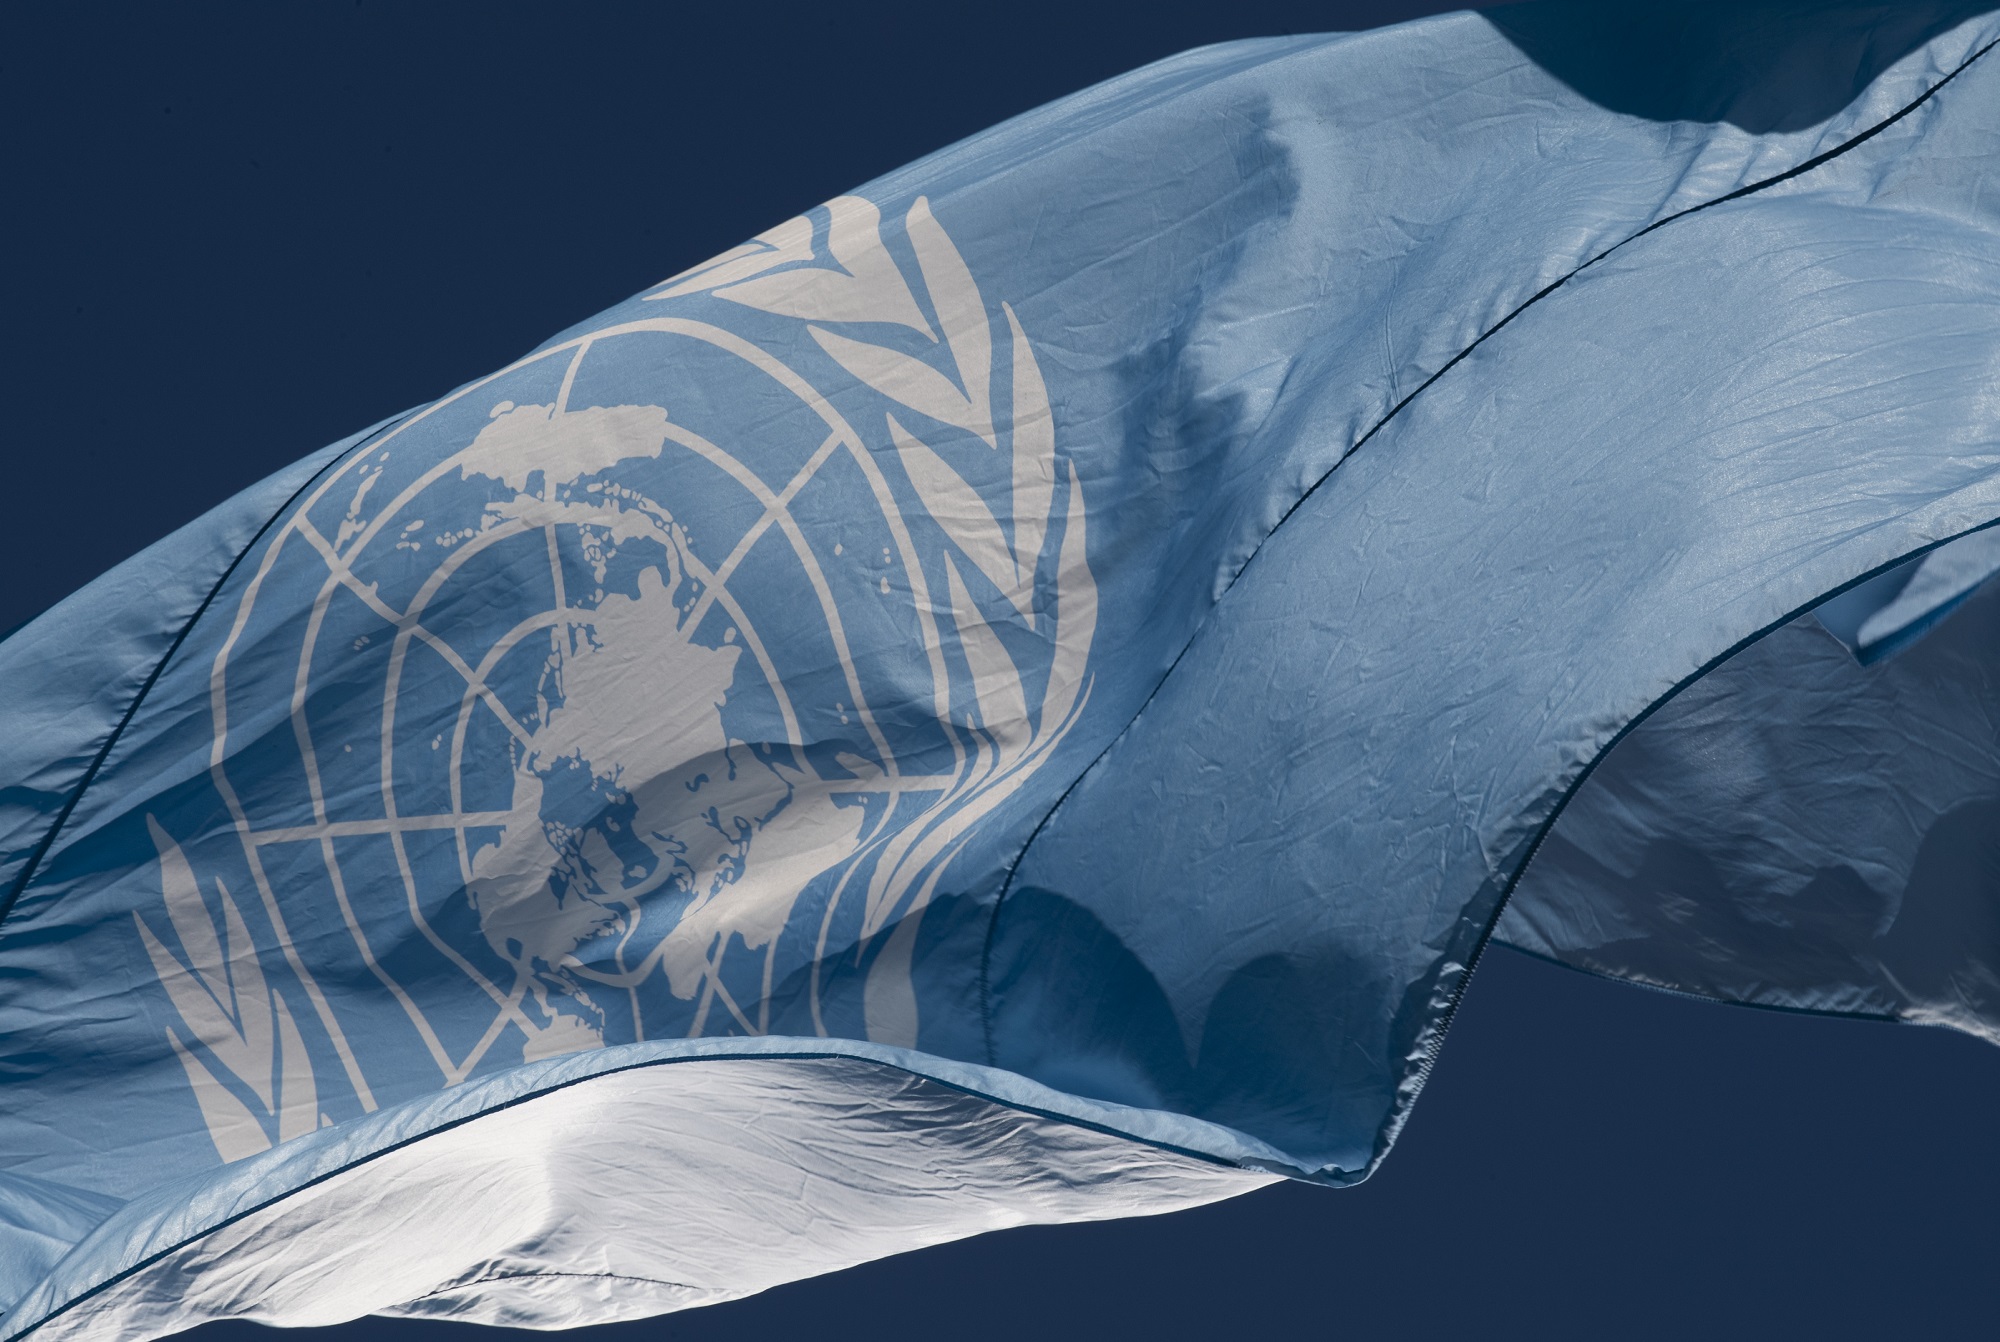 联合国旗帜飘扬——淡蓝色的田野上的白色徽章。